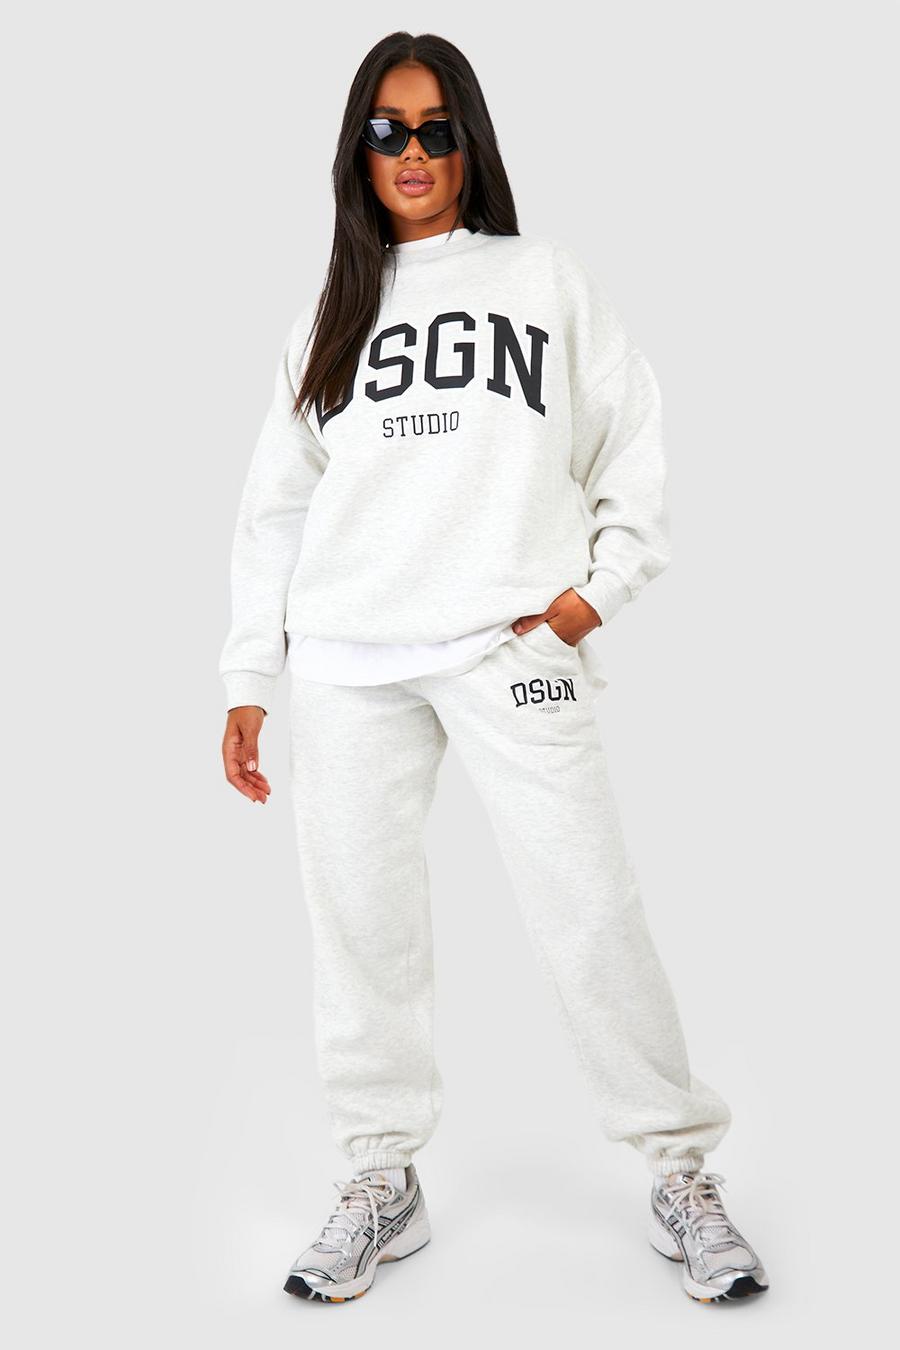 Pantaloni tuta oversize con stampa di slogan Dsgn Studio, Ash grey